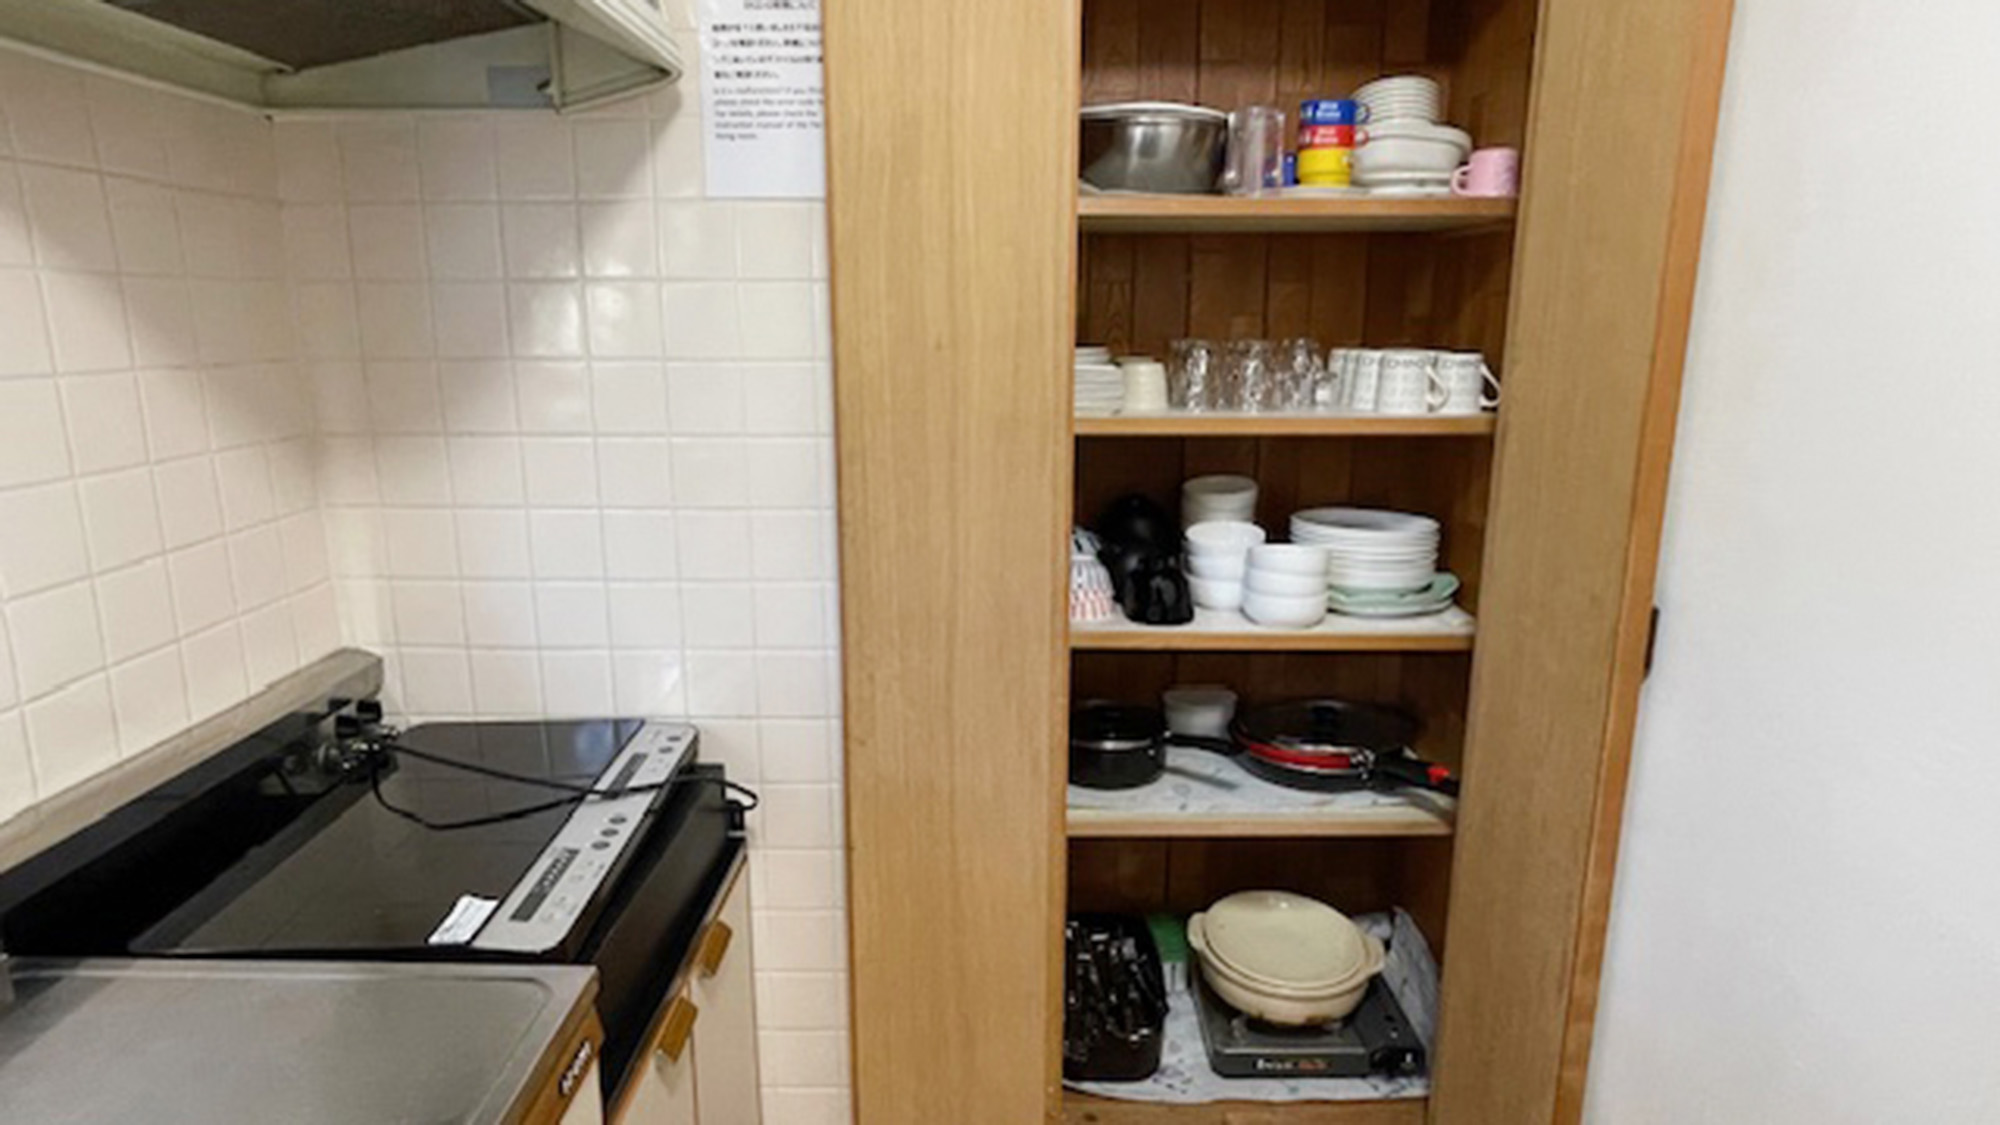 ・【キッチン】大小様々な食器を揃えております。大人数の宿泊でも安心